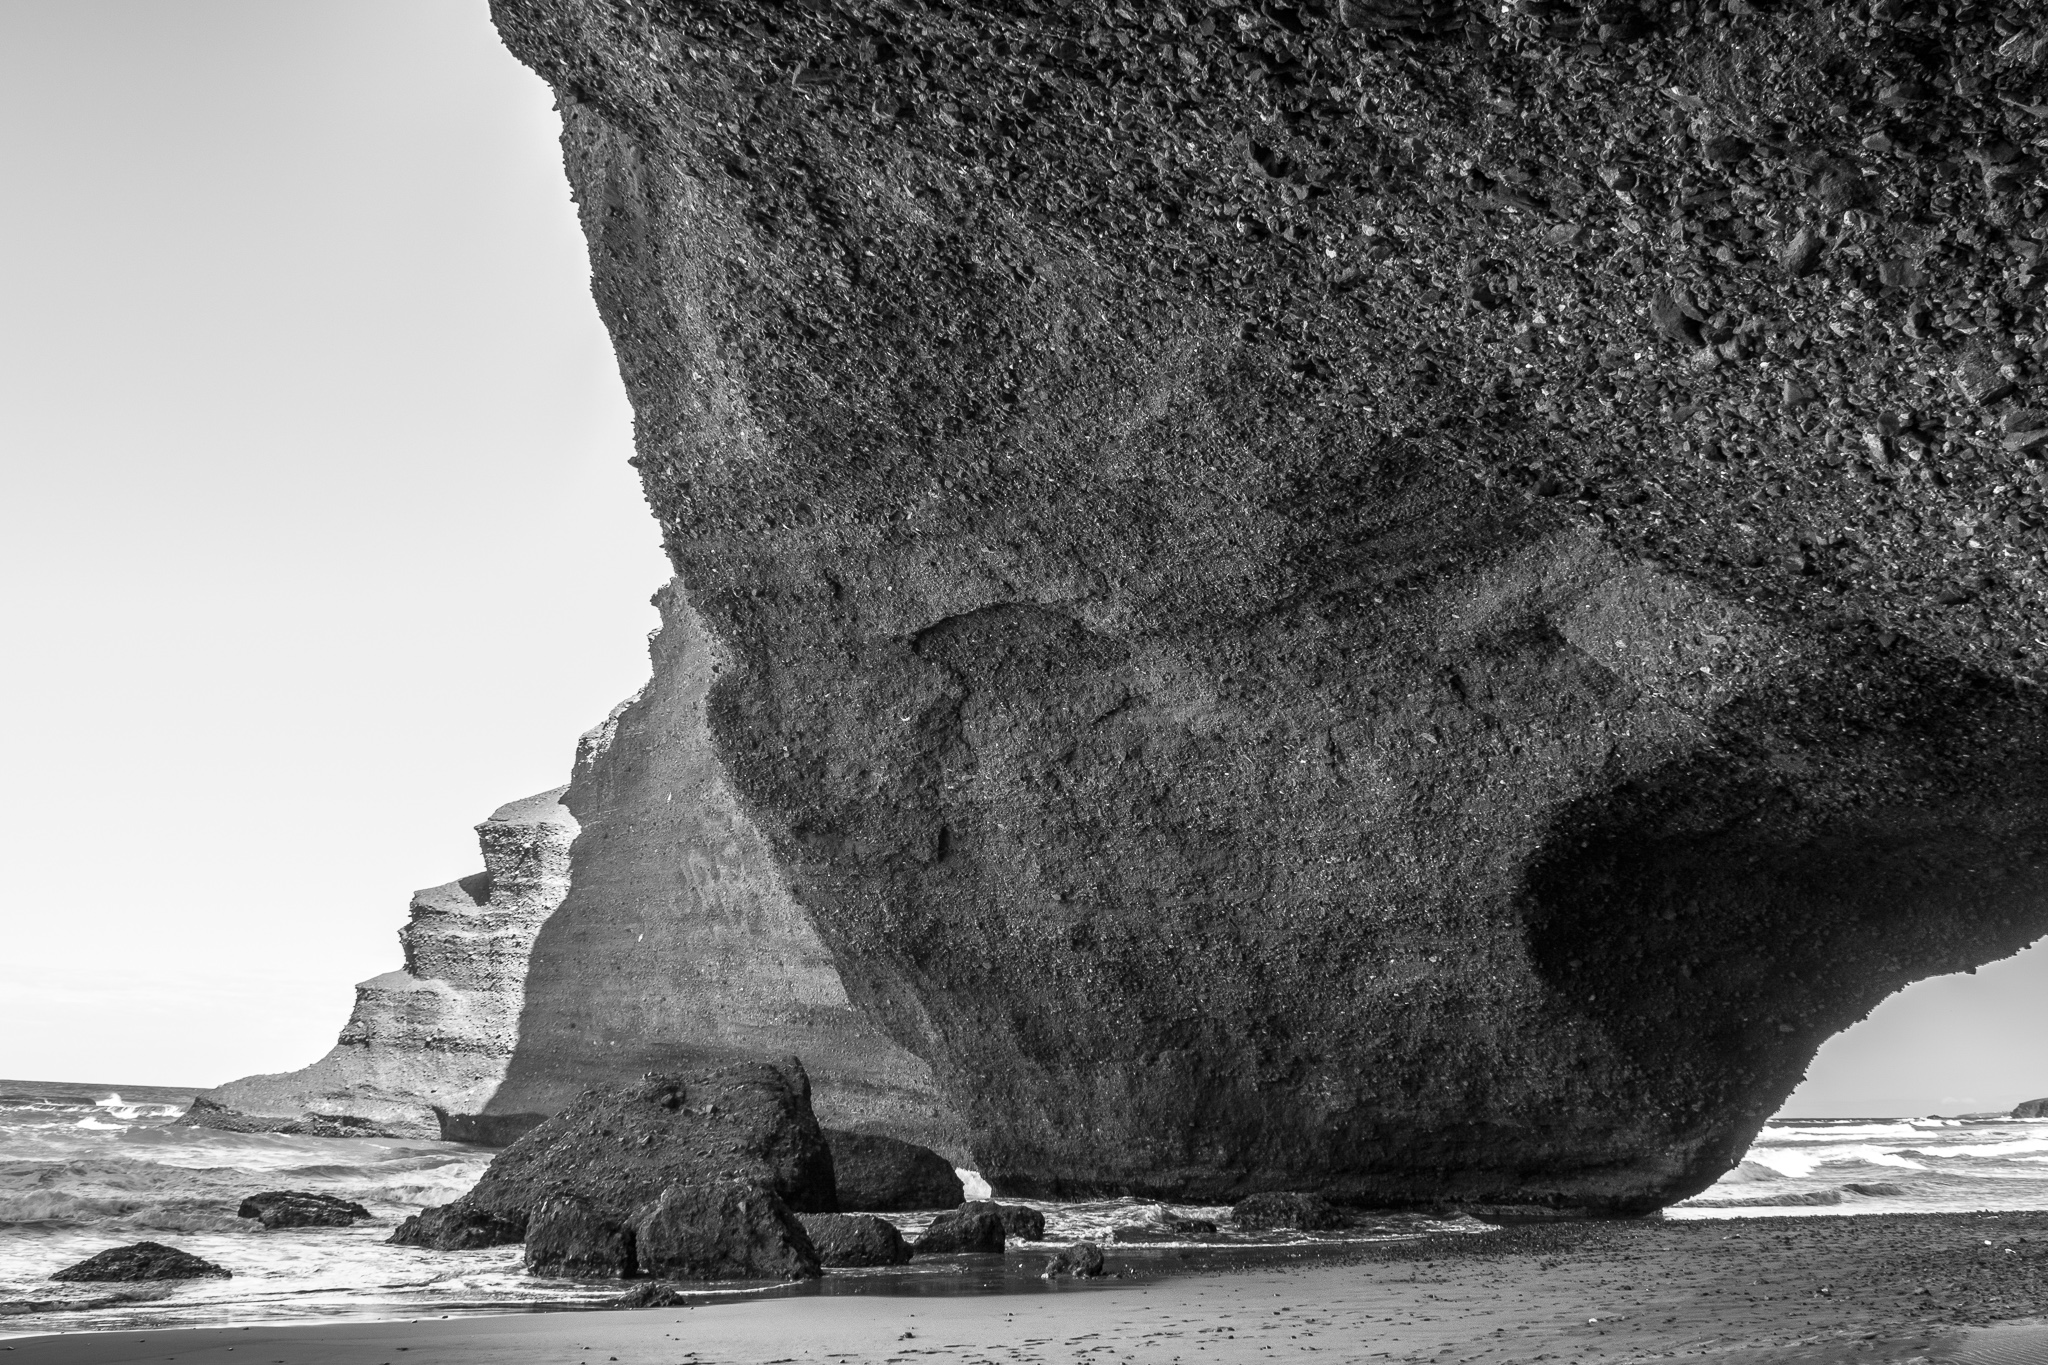 La playa de Legzira se encuentra unos 10 km al norte de la localidad de Sidi Ifni, antigua colonia española de Marruecos. <br>Sus monumentales puentes naturales, arcos de piedra roja y pie de elefante, han sido tallados por la erosión marina durante siglos. <br>Recientemente, en 2016, se derrumbó tras agrietarse uno de los arcos más emblemáticos de la playa.